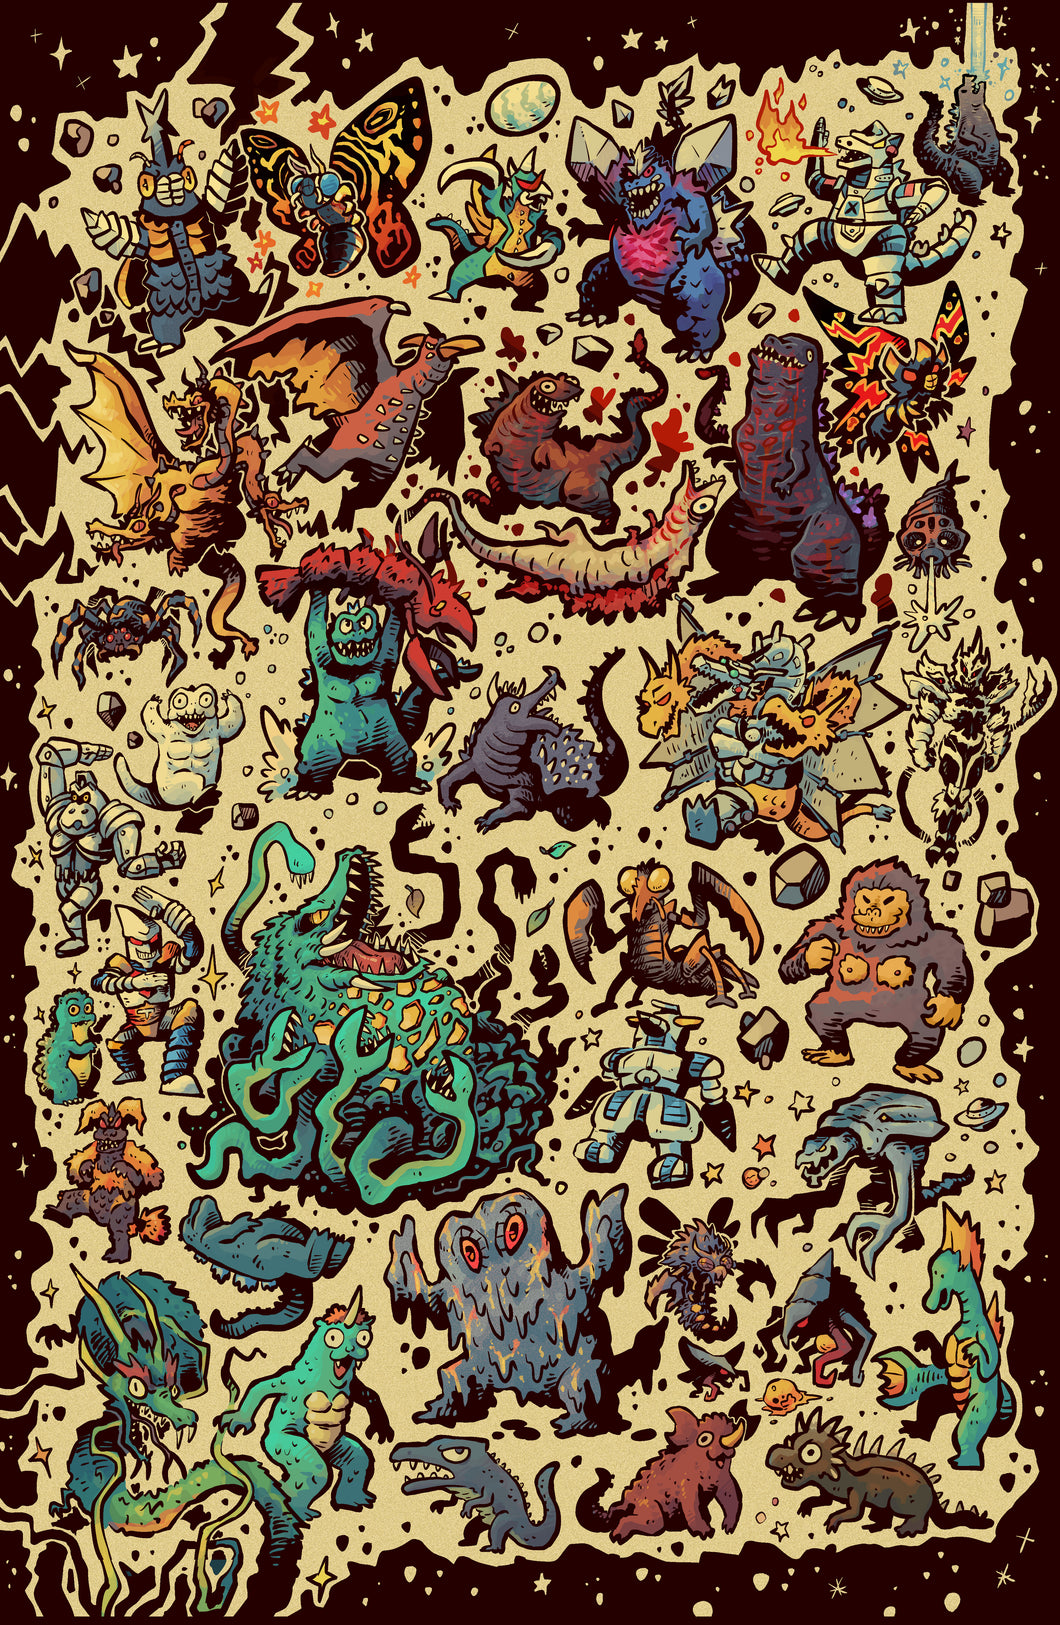 Godzilla Destroy All Kaiju - 11 x 17 Poster Print